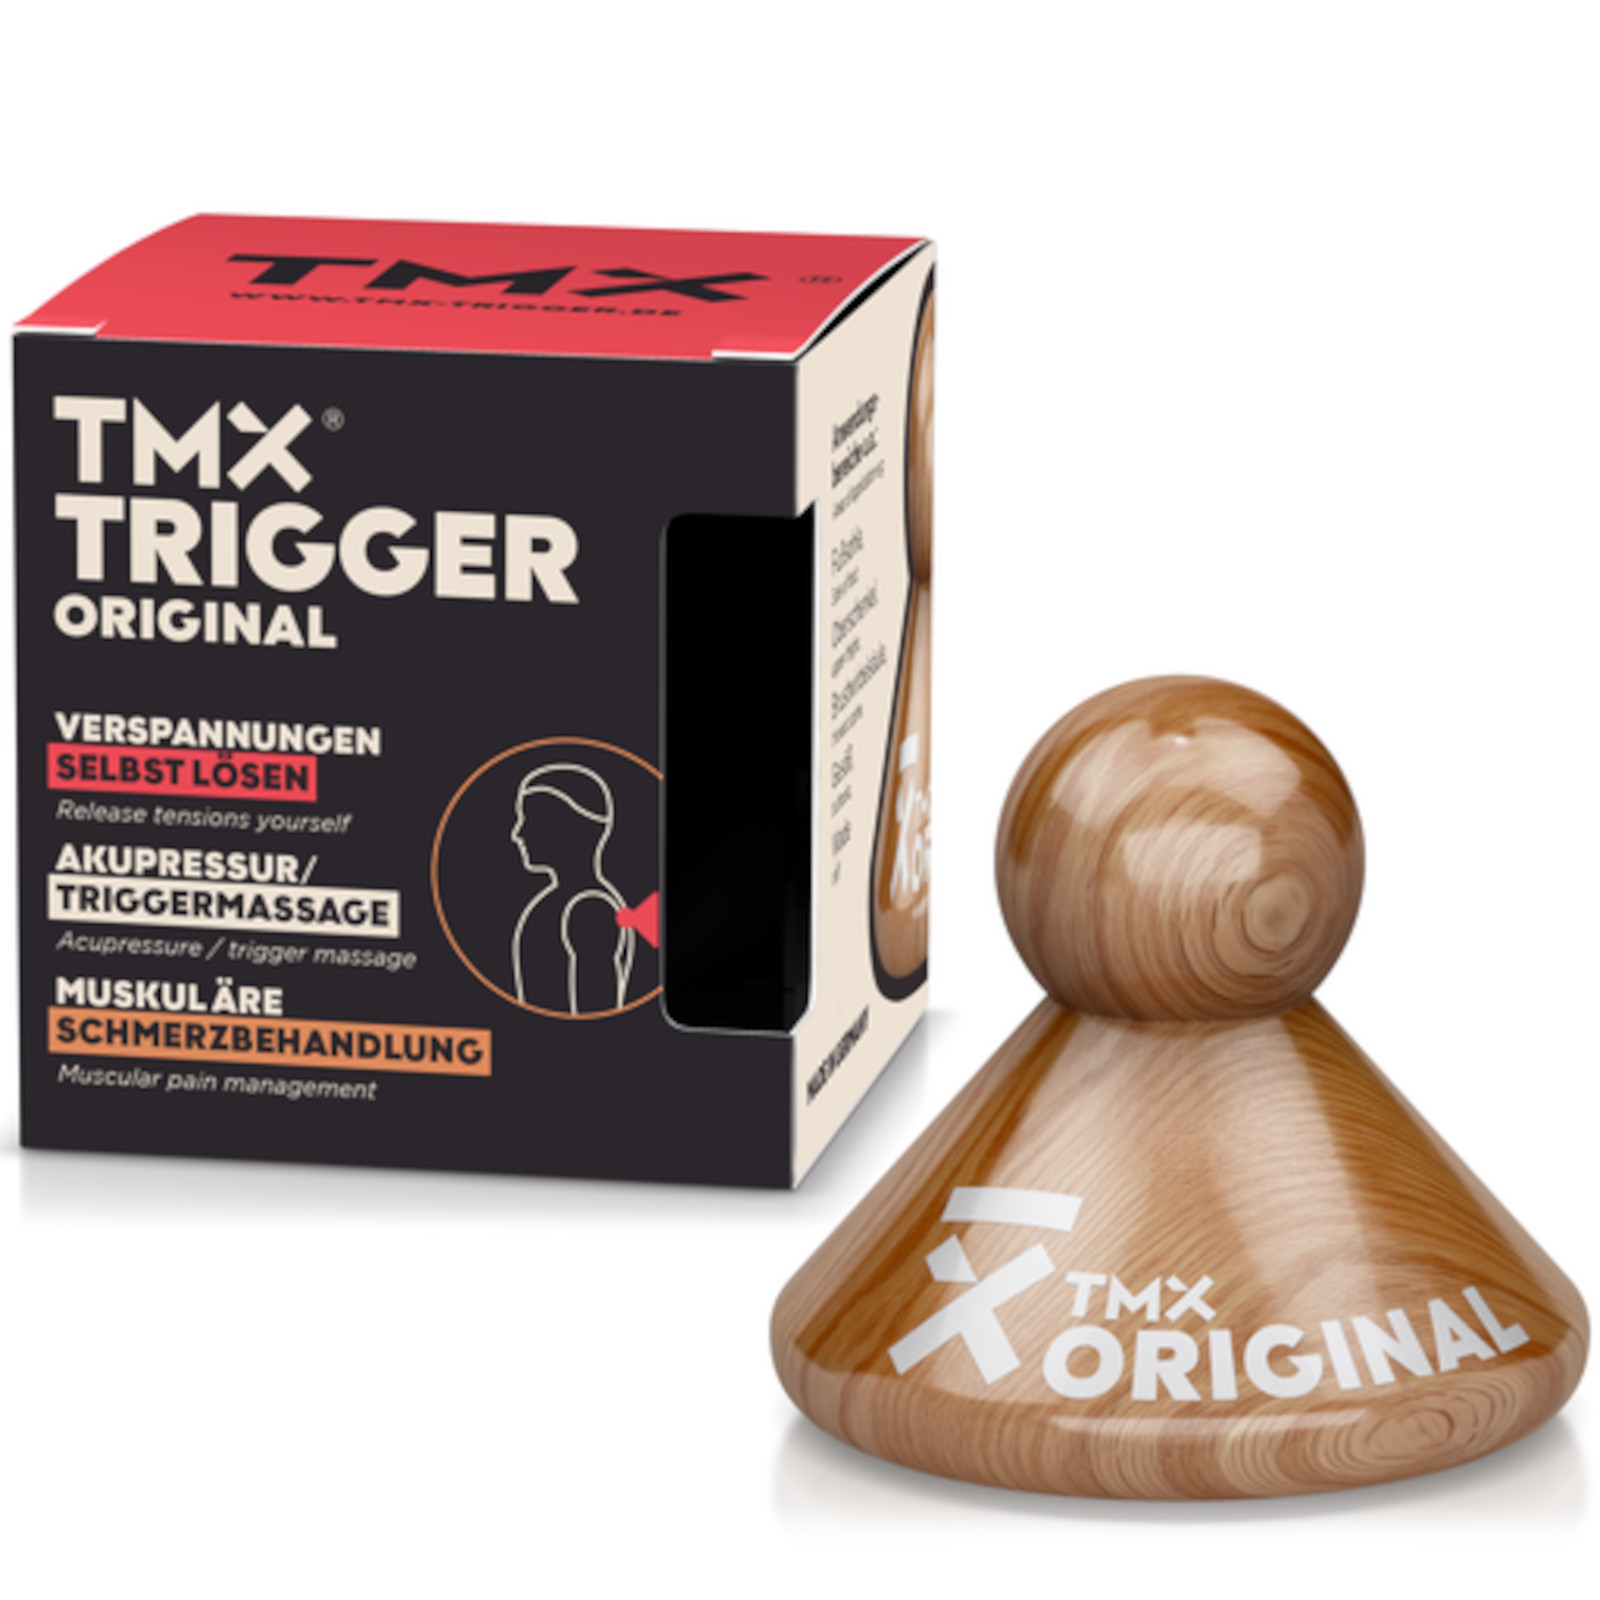 TMX Trigger Original